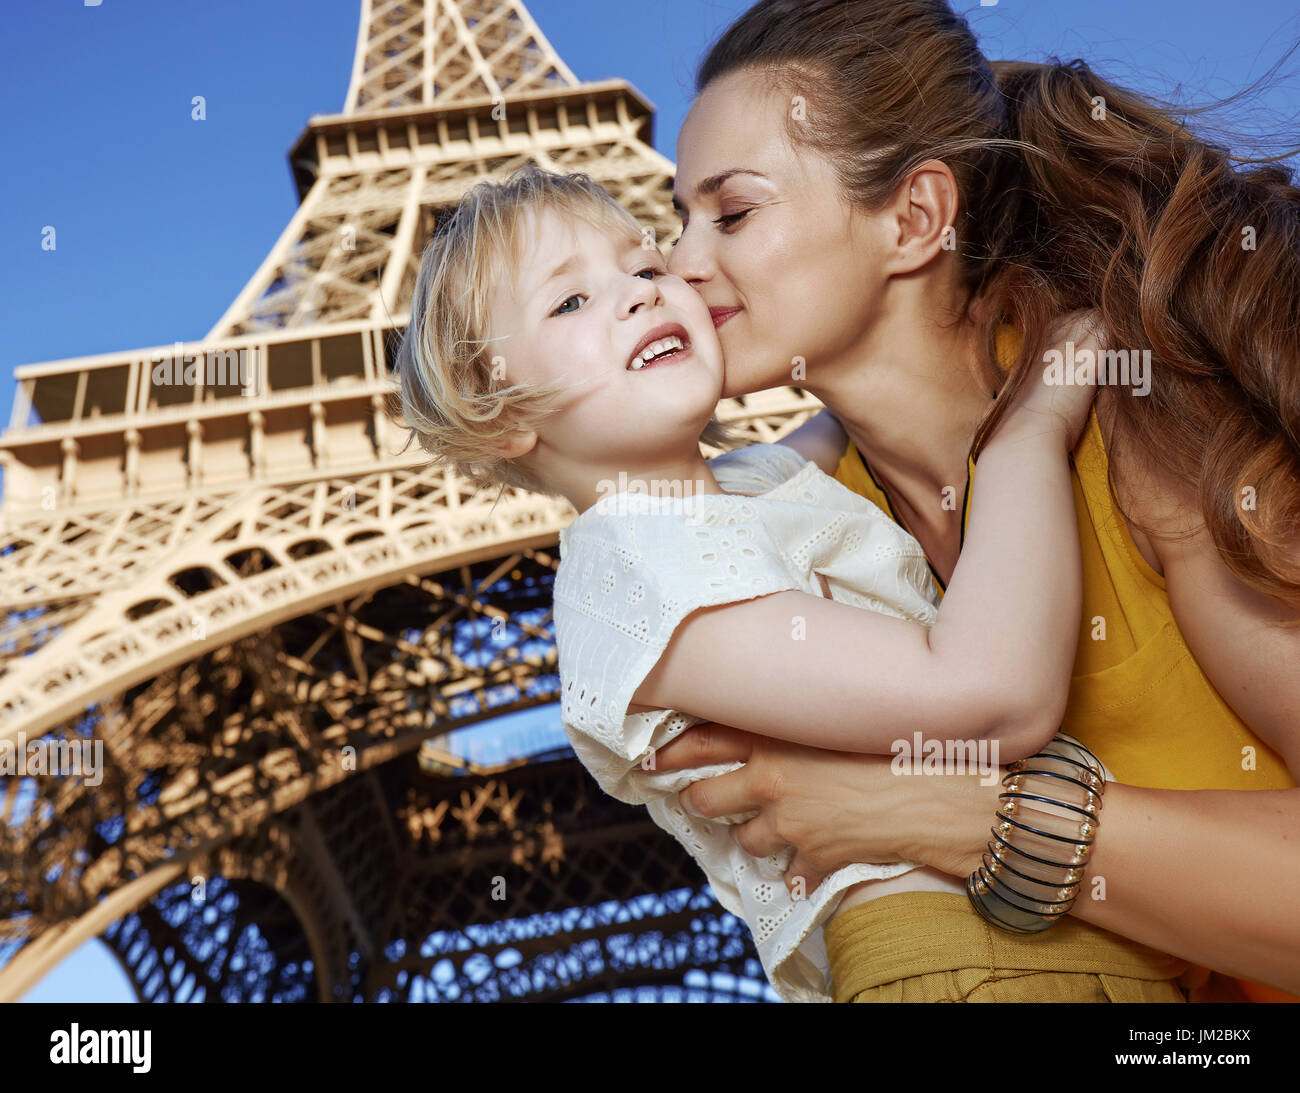 Turistica, senza dubbio, ma ancora in modo divertente. felice la madre e il bambino turisti kissing contro la Torre Eiffel a Parigi, Francia Foto Stock